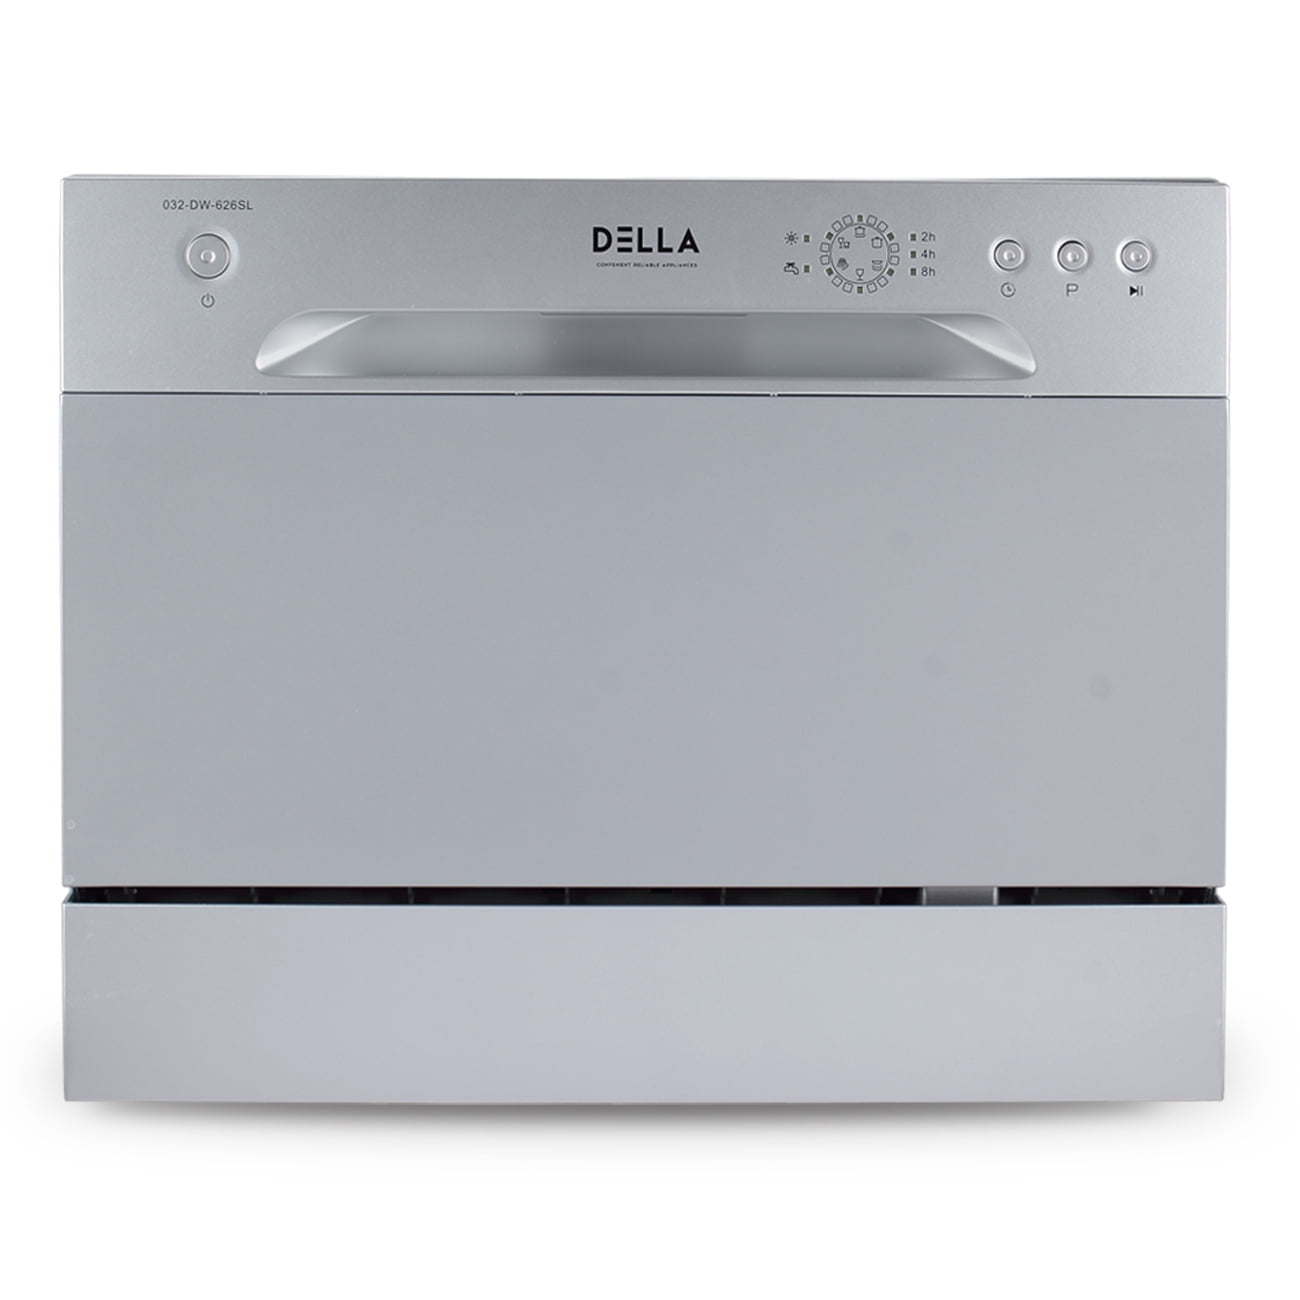 Della Portable Mini Countertop Dishwasher W 6 Place Settings